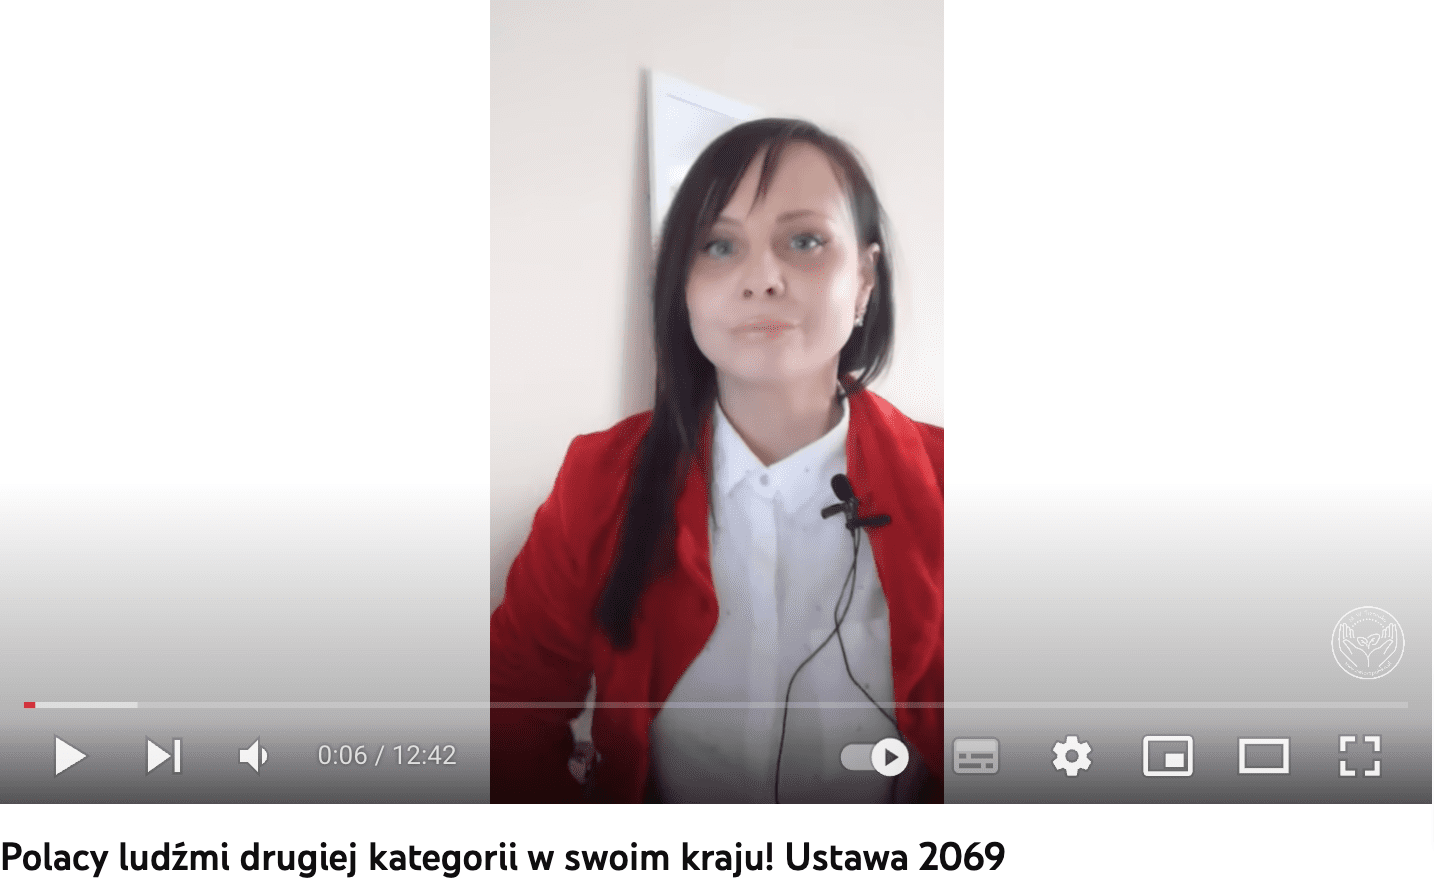 Zrzut ekranu filmu na YouTubie na temat rzekomego uprzywilejowania Ukraińców w Polsce. Widoczna jest kobieta z długimi, ciemnymi włosami w białej koszuli i czerwonej marynarce.